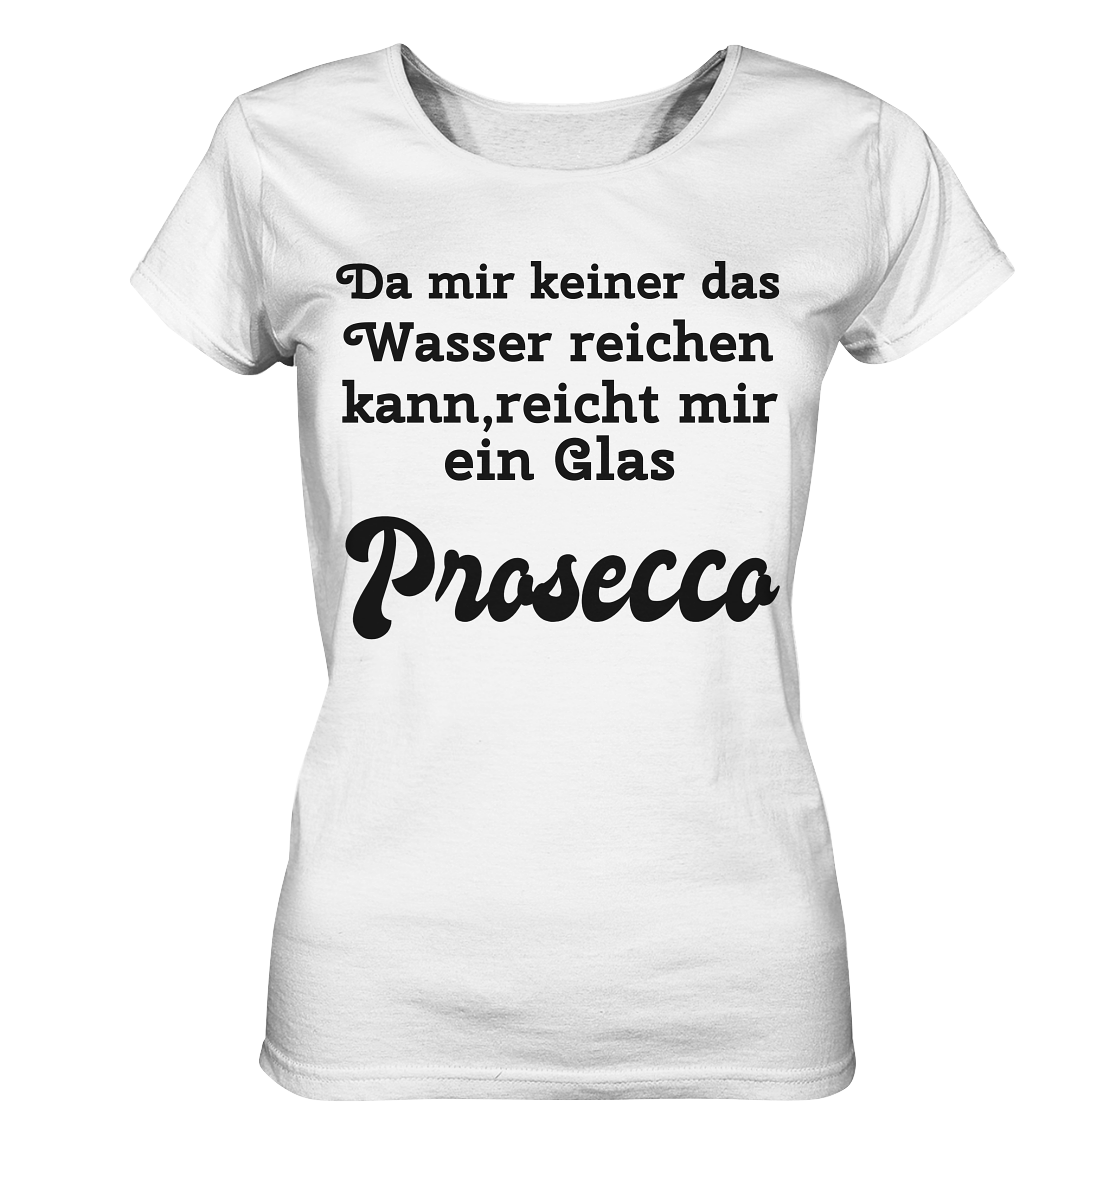 Da mir keiner das Wasser reichen kann, reicht mir ein Glas Prosecco -Designe Munich Palms  - Ladies Organic Basic Shirt